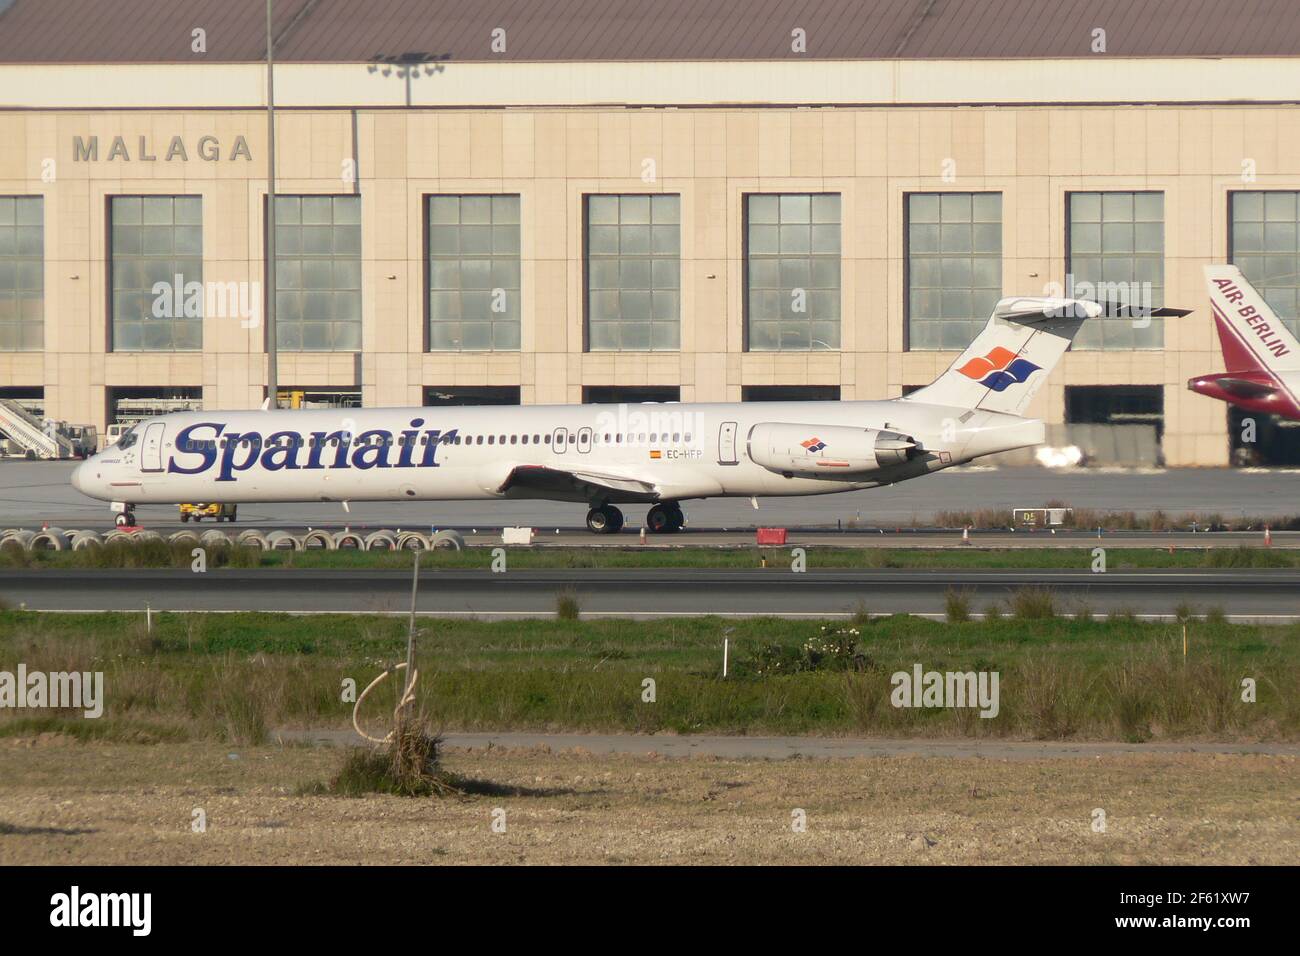 Malaga, Spanair McDonnell Douglas MD-82 (EC-HFP) è stato distrutto quando si è schiantato al decollo all'aeroporto di Madrid-Barajas (MAD), Spagna. 154 persone sono morte. Foto Stock